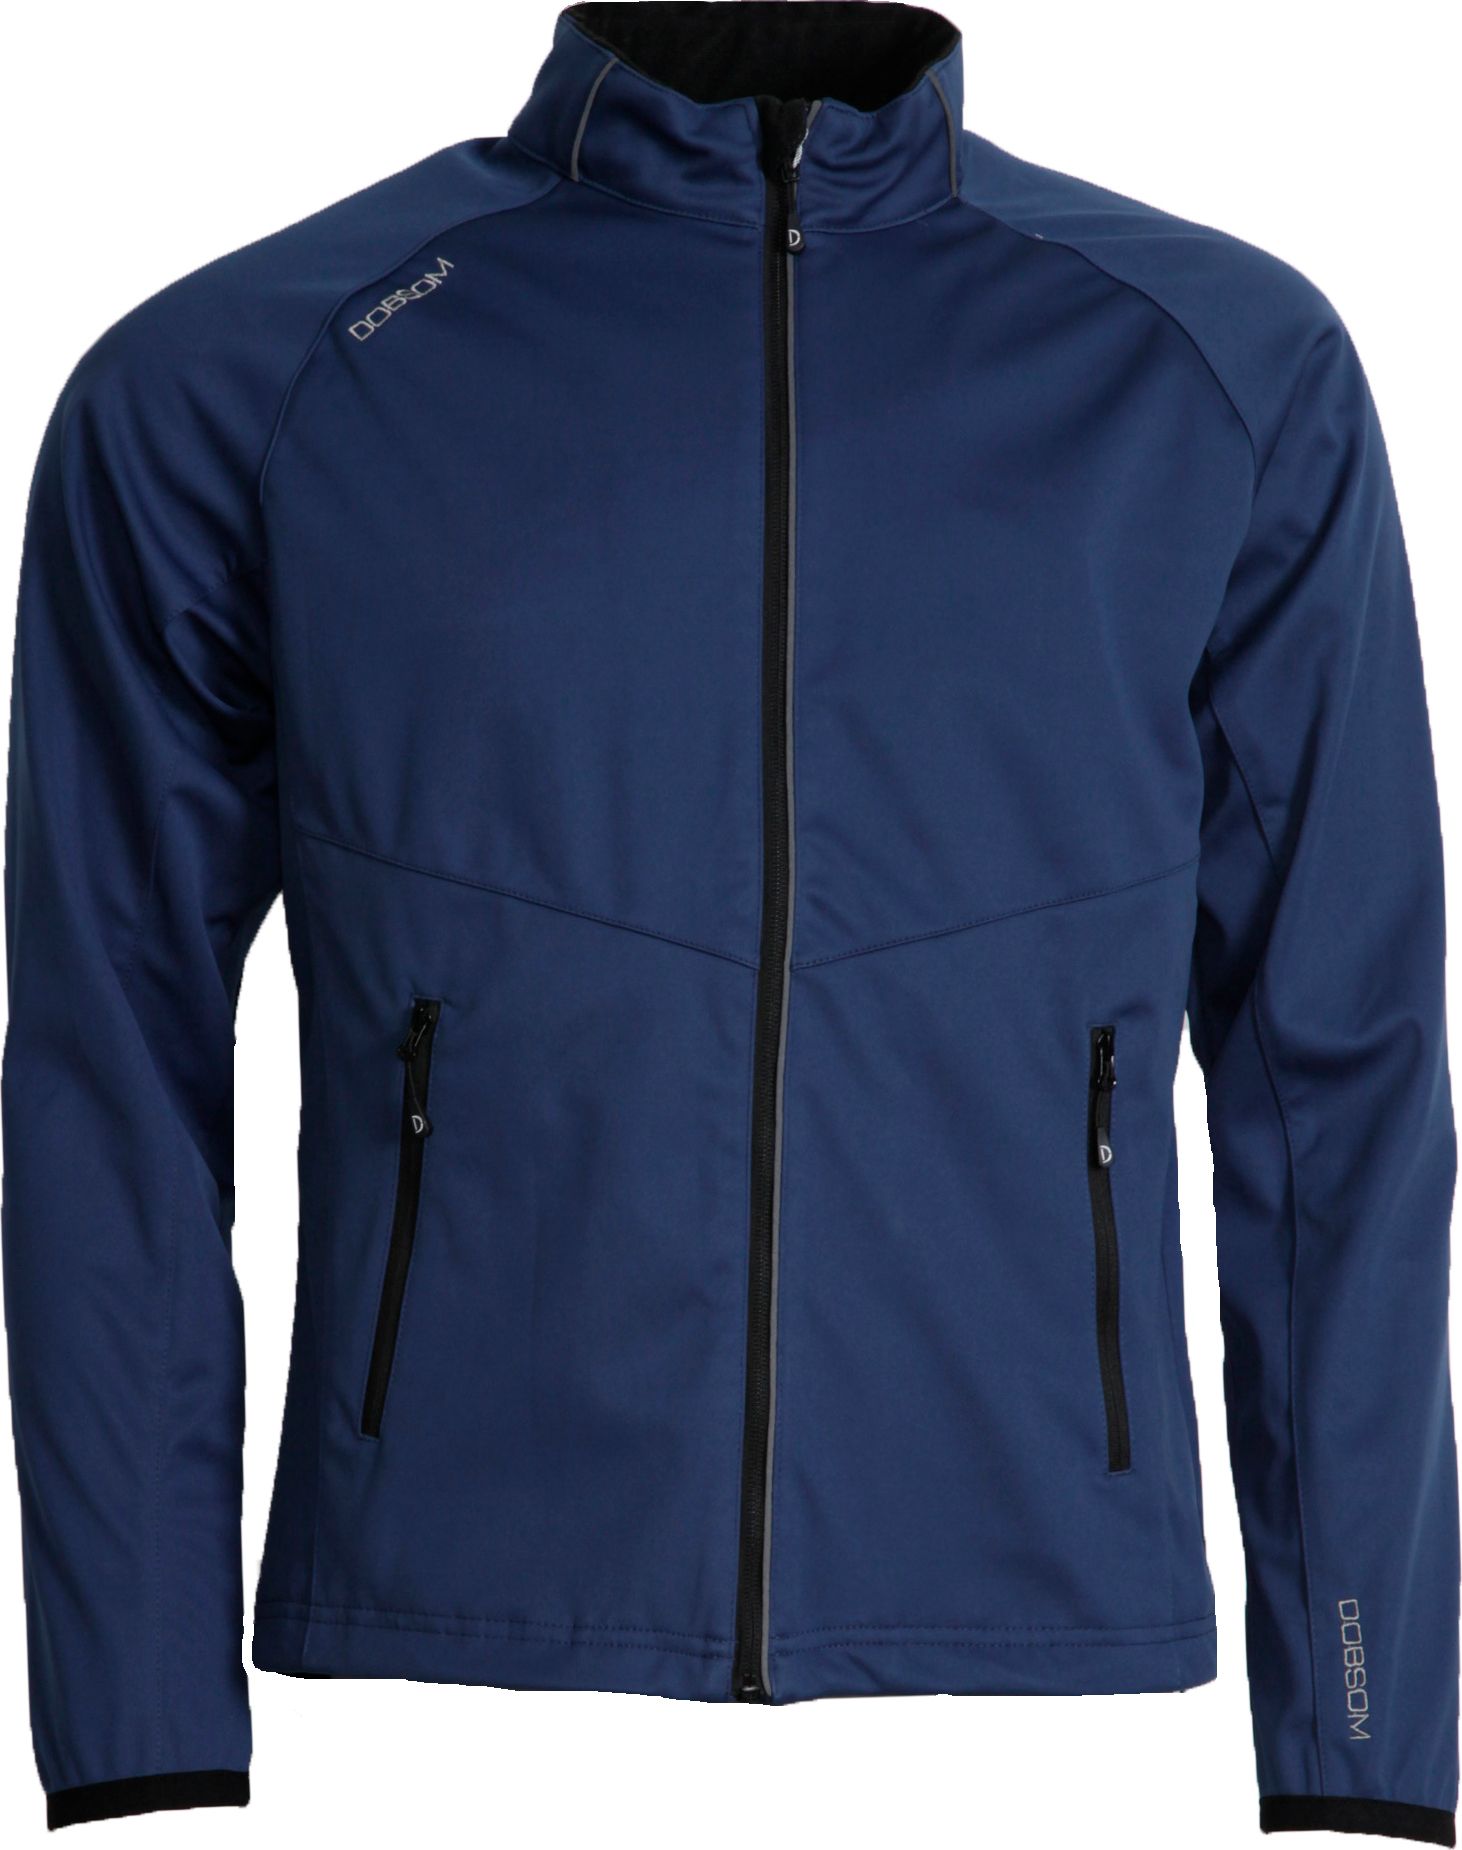 Men's Endurance Jacket Bluegrey